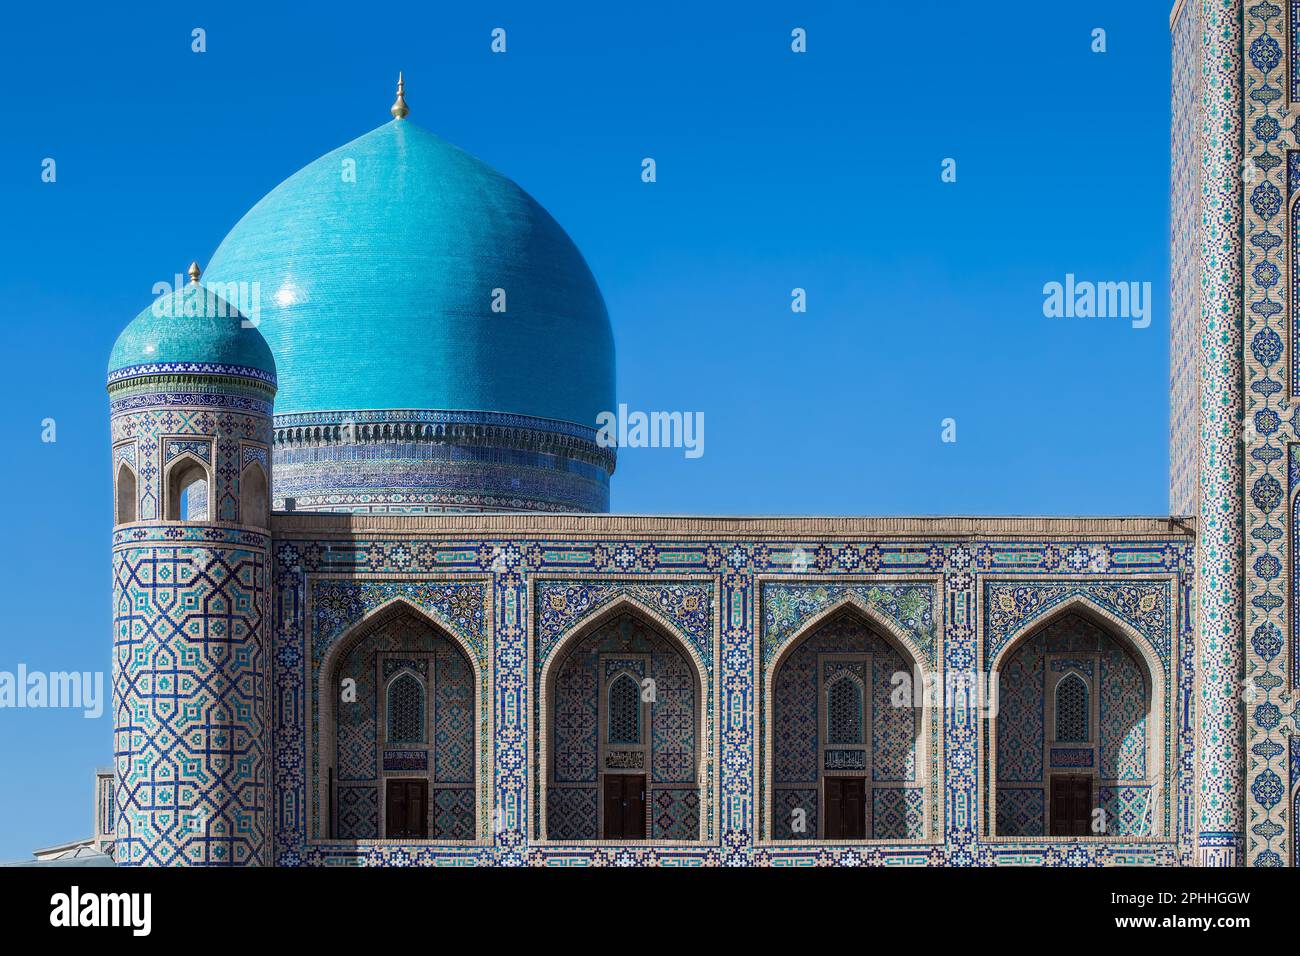 Bruchstücke der Architektur Tilya Kori Madrasah (islamische religiöse Schulen) auf dem Registan-Platz - Hauptplatz im historischen Samarkand, Usbekistan Stockfoto